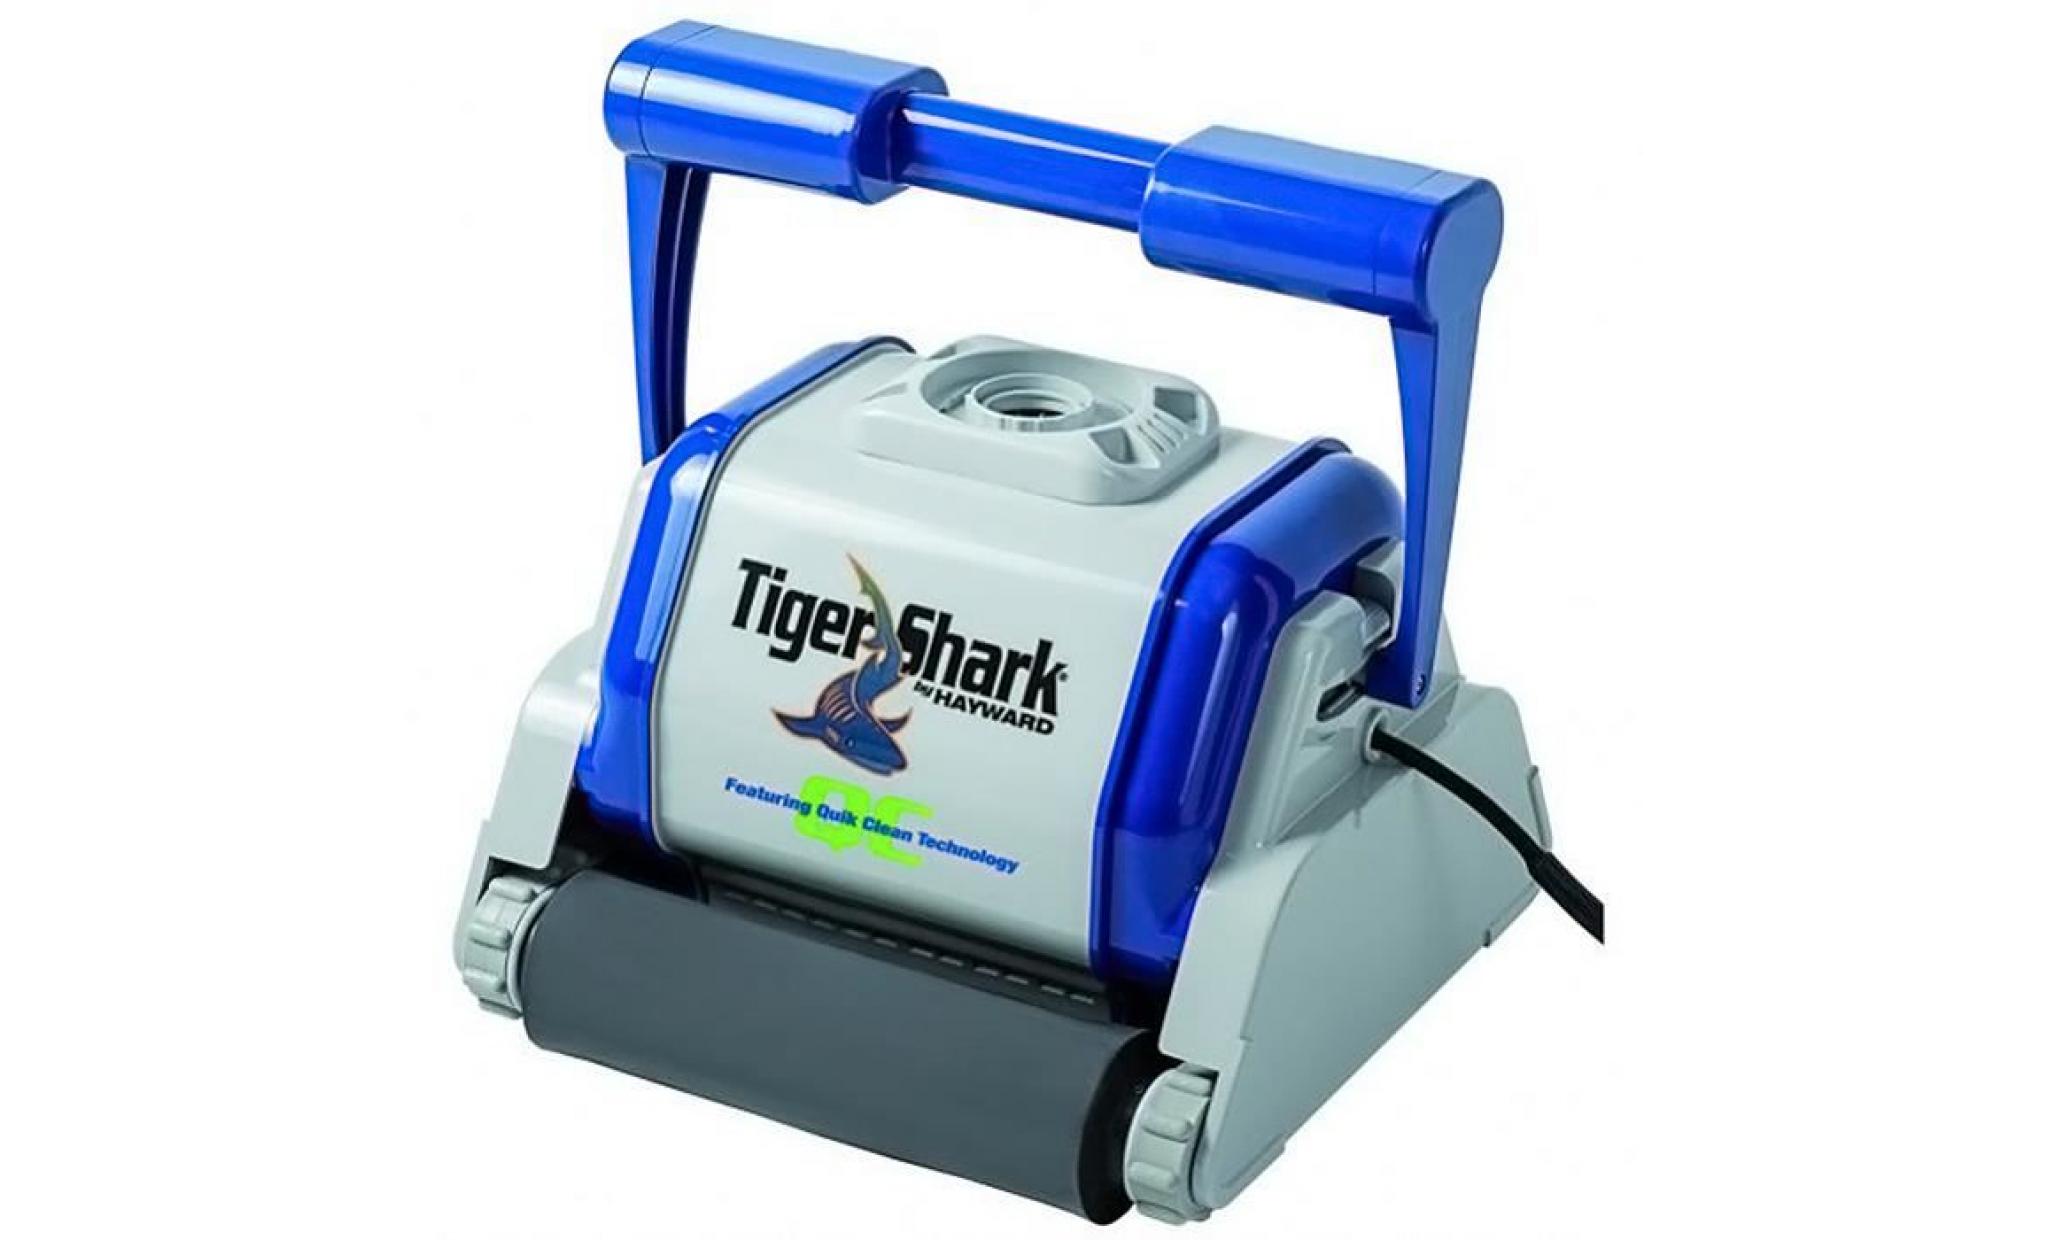 hayward   robot autonome electrique qc brosse mousse   tiger shark quick clean   rc9994fc